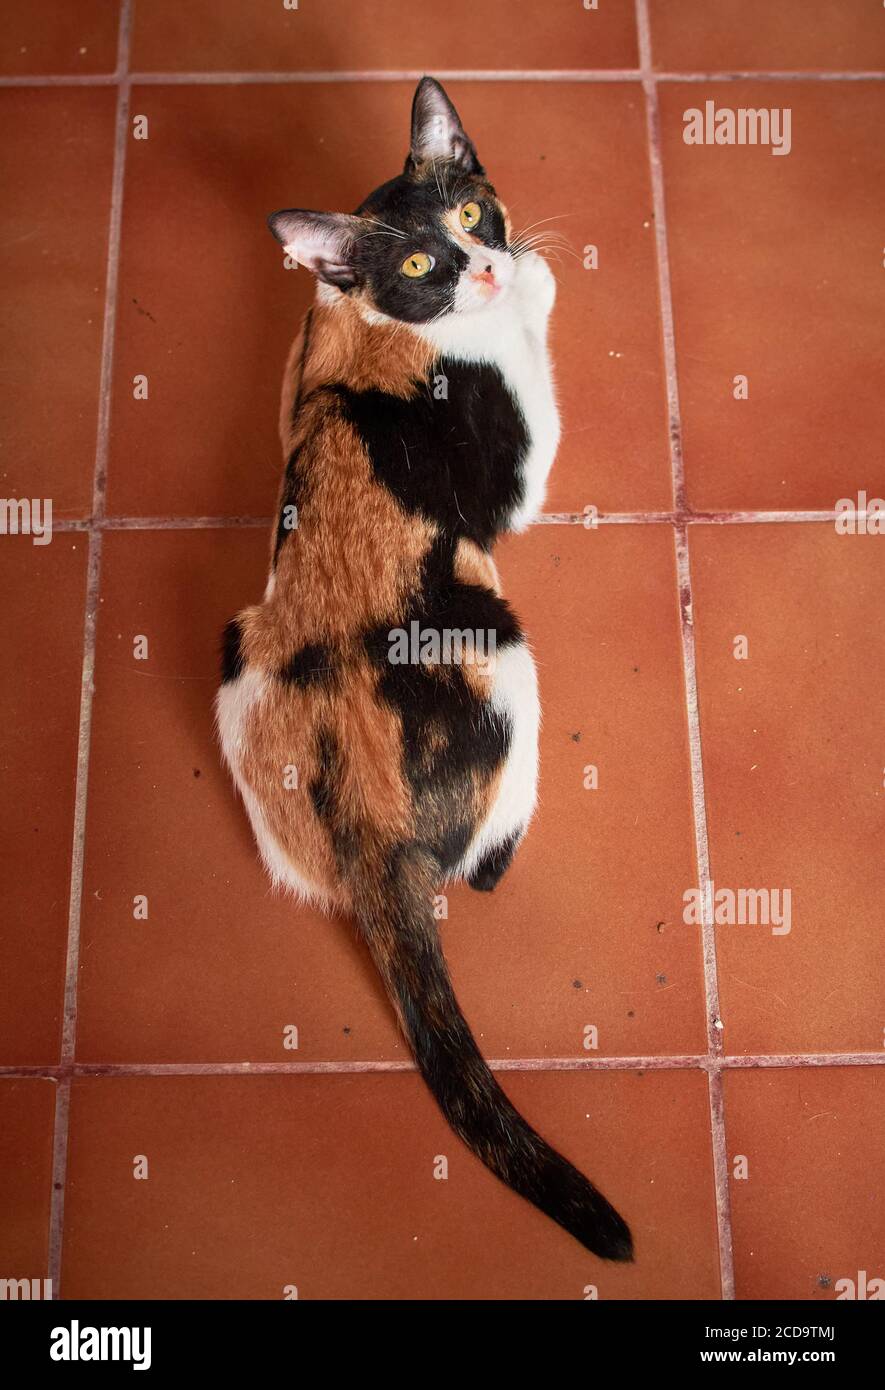 Immagine verticale ad angolo elevato di un bianco e nero con i punti dorati del gatto giacciono su un pavimento piastrellato Foto Stock